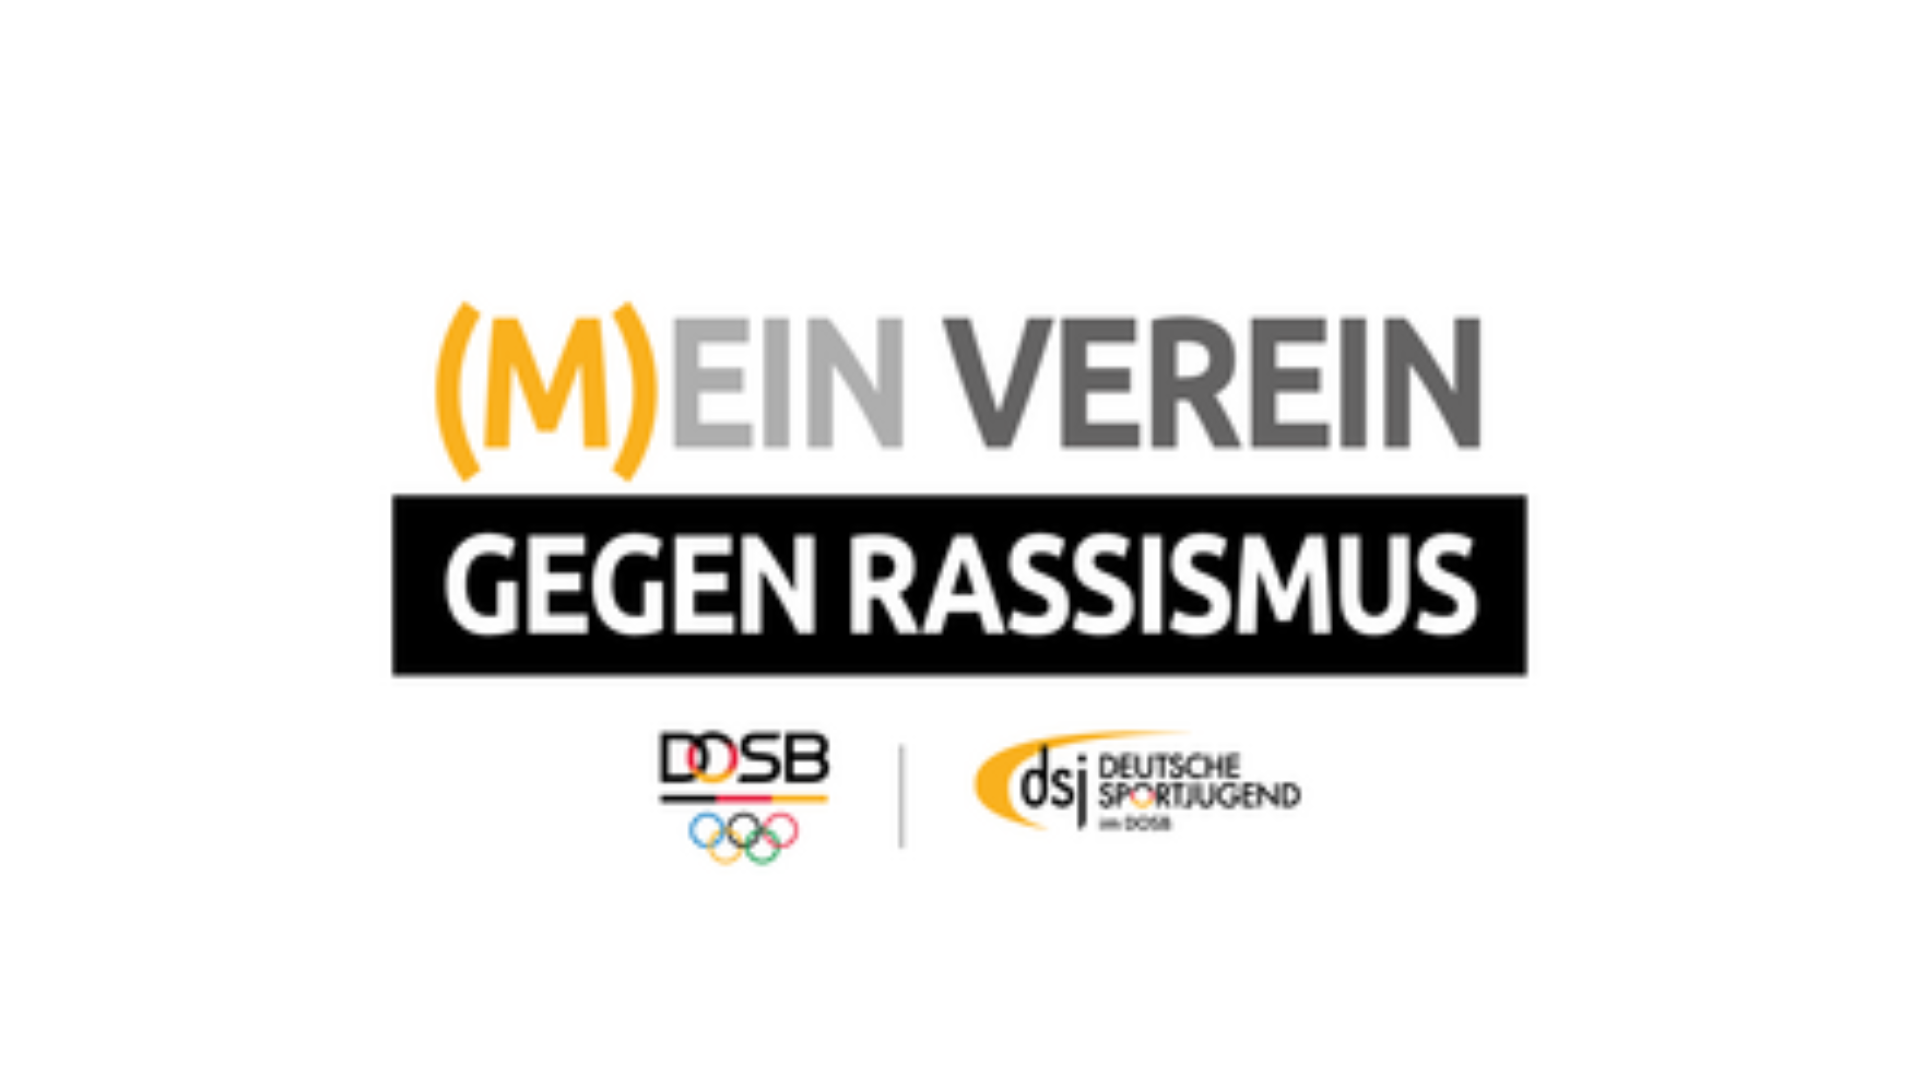 Vereinswettbewerb von DOSB / DSJ: (M)ein Verein gegen Rassismus